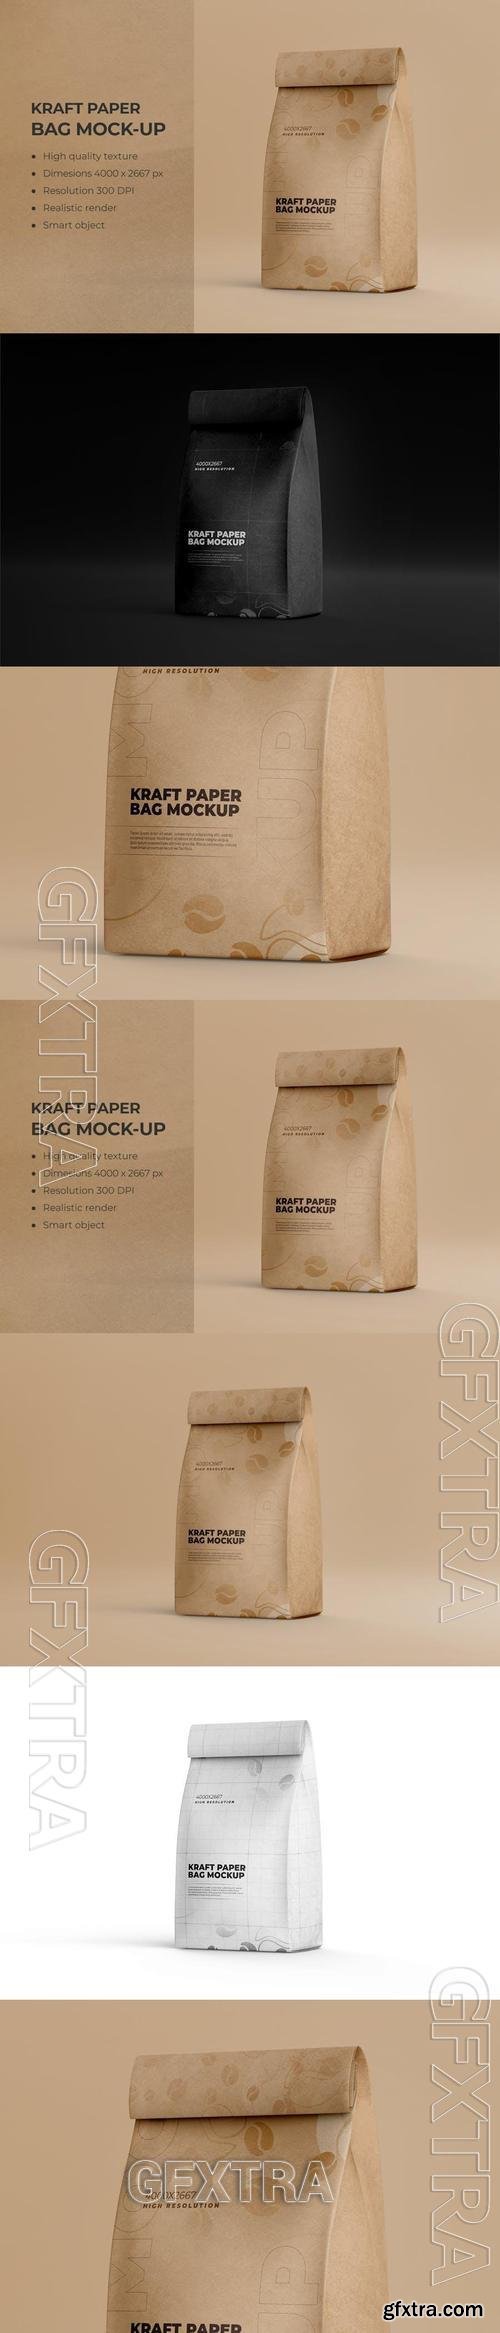 Kraft Paper Packaging Food Bag Mockup 969F486